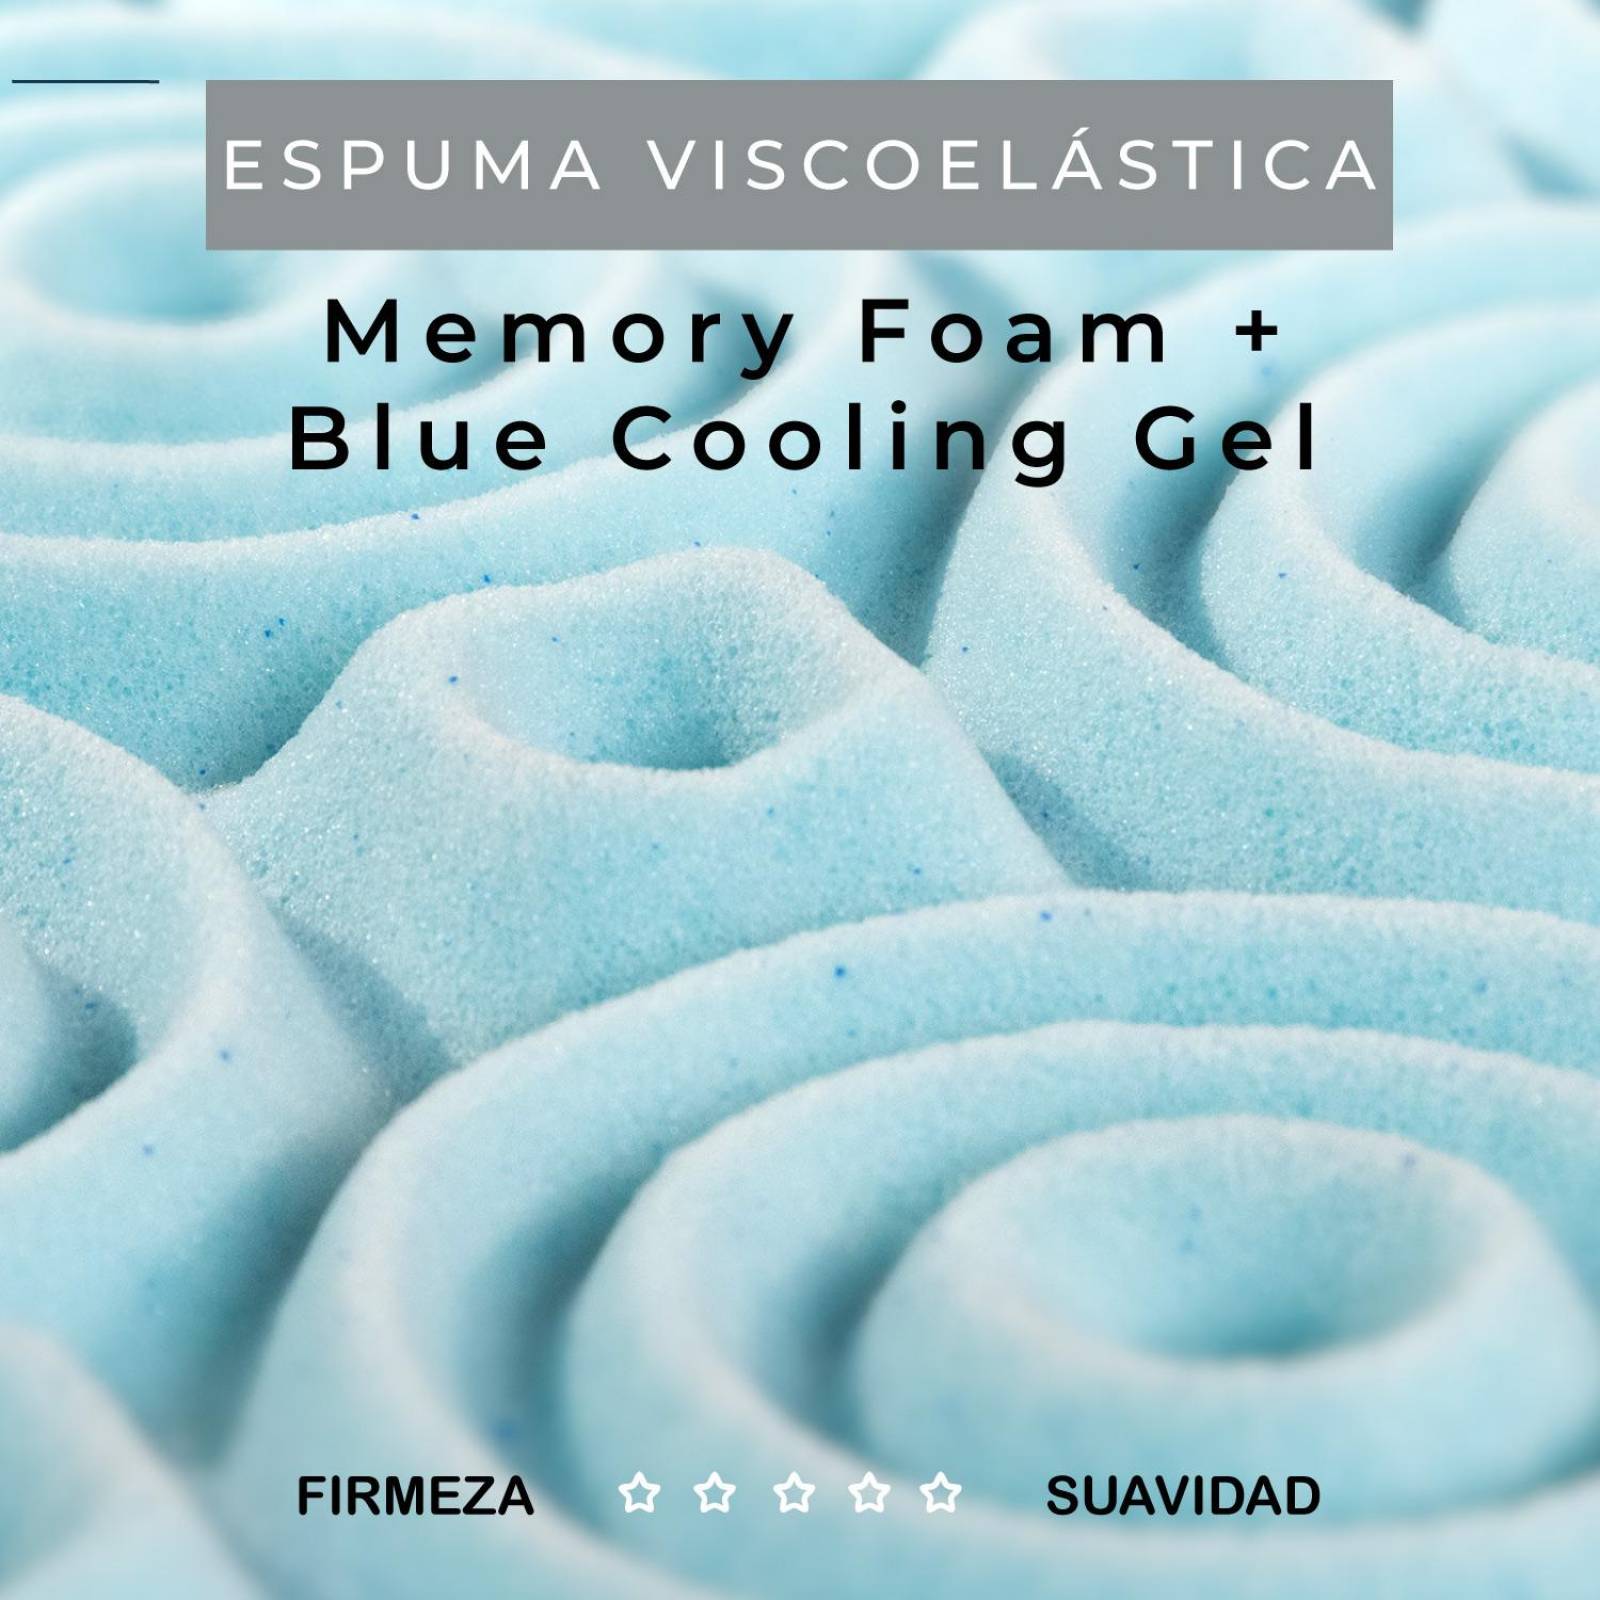 Colchoneta Memory Foam En Espuma Viscoelastica.